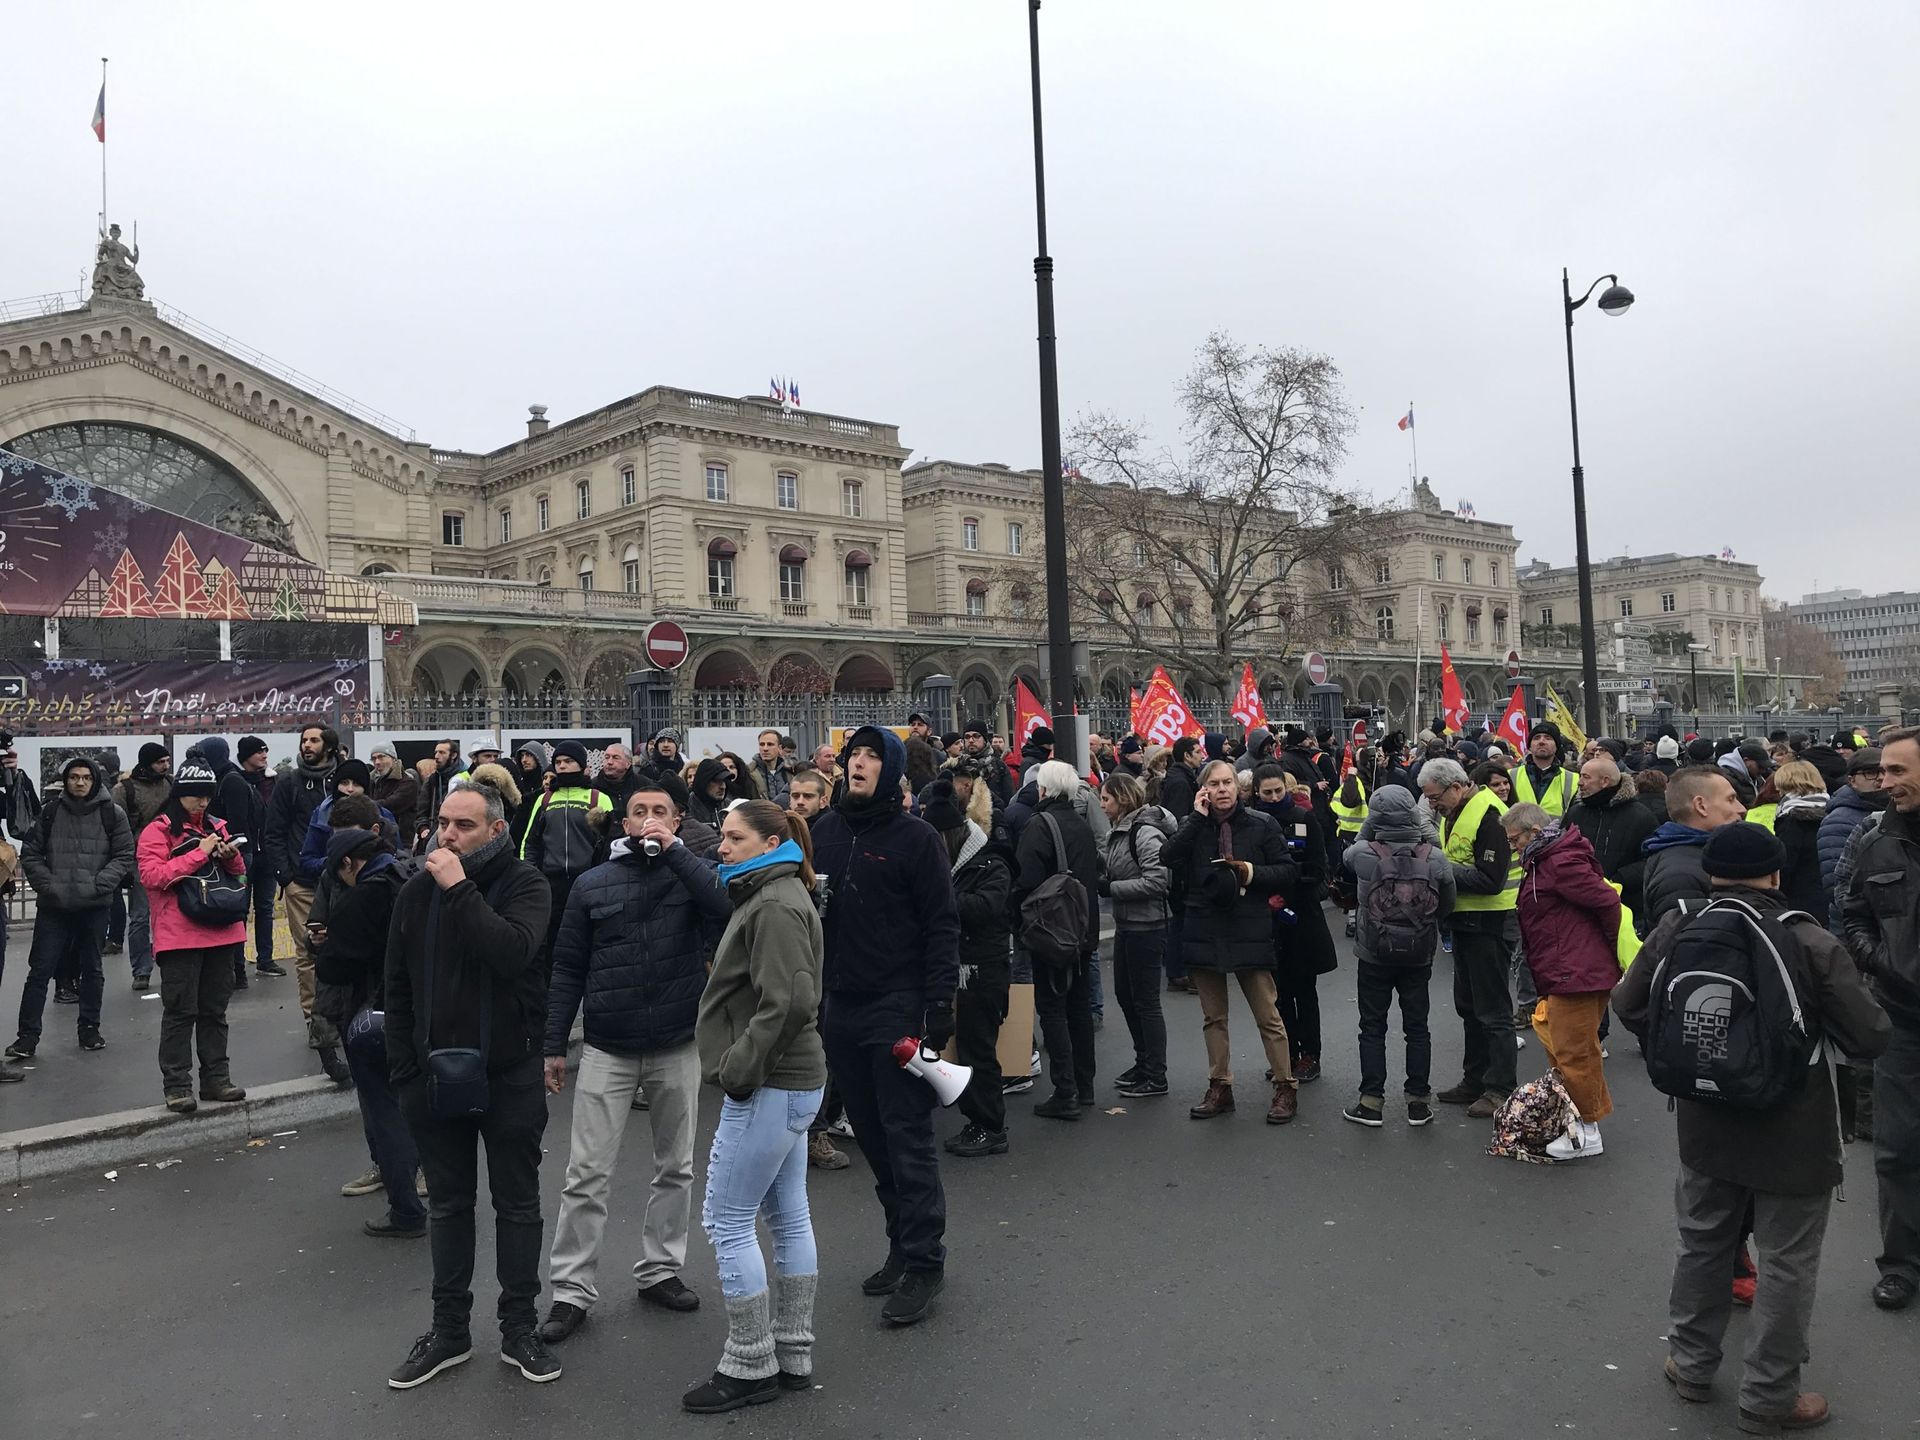 Réforme des retraites: la France entière mobilisée pour ce premier jour de grève 34f50910